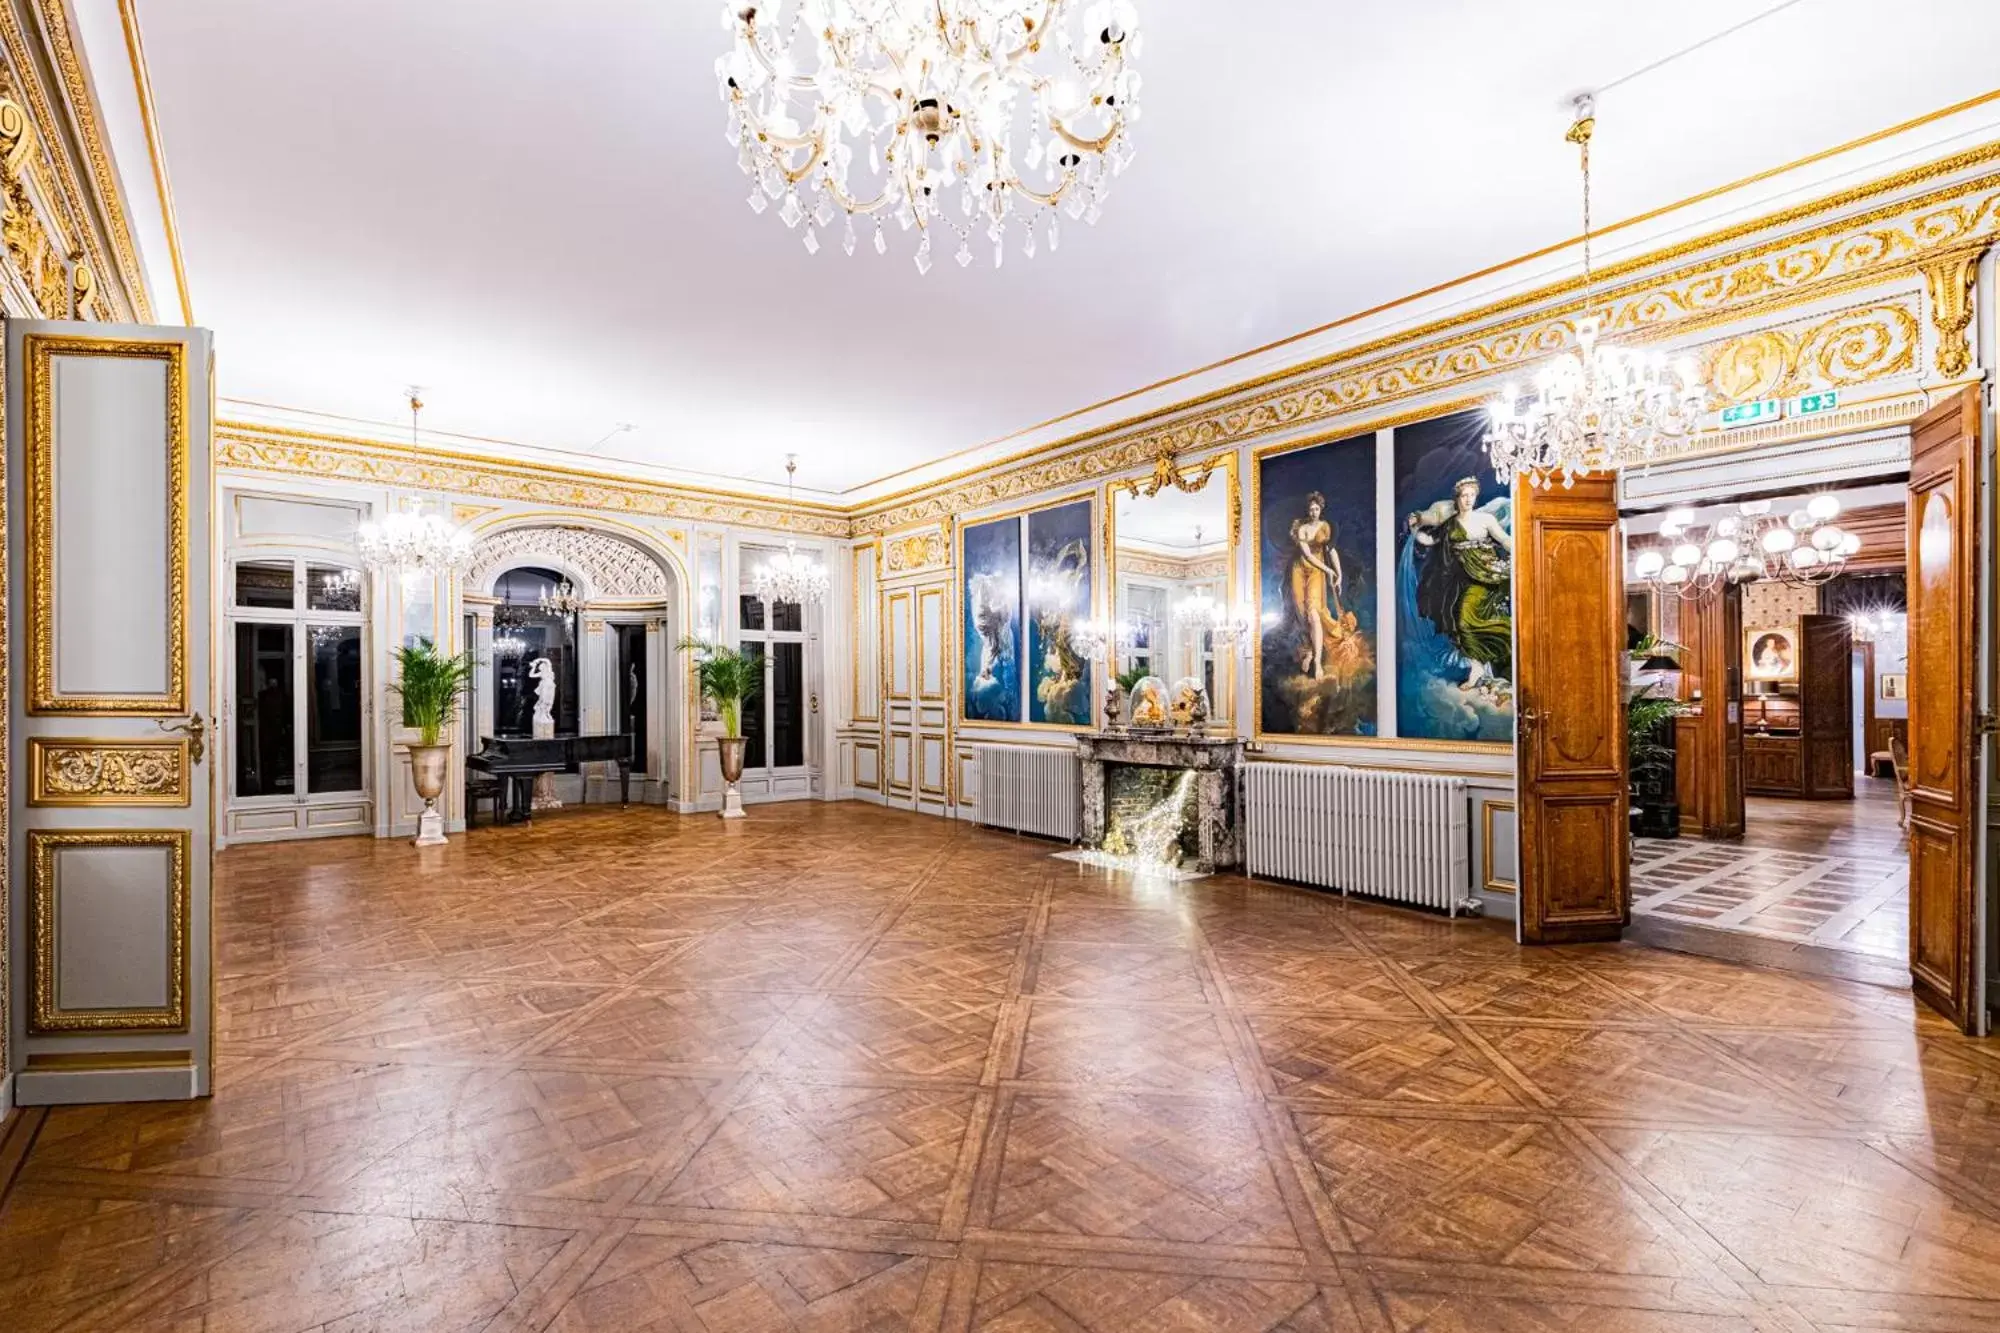 Banquet/Function facilities, Lobby/Reception in Château de Pourtalès